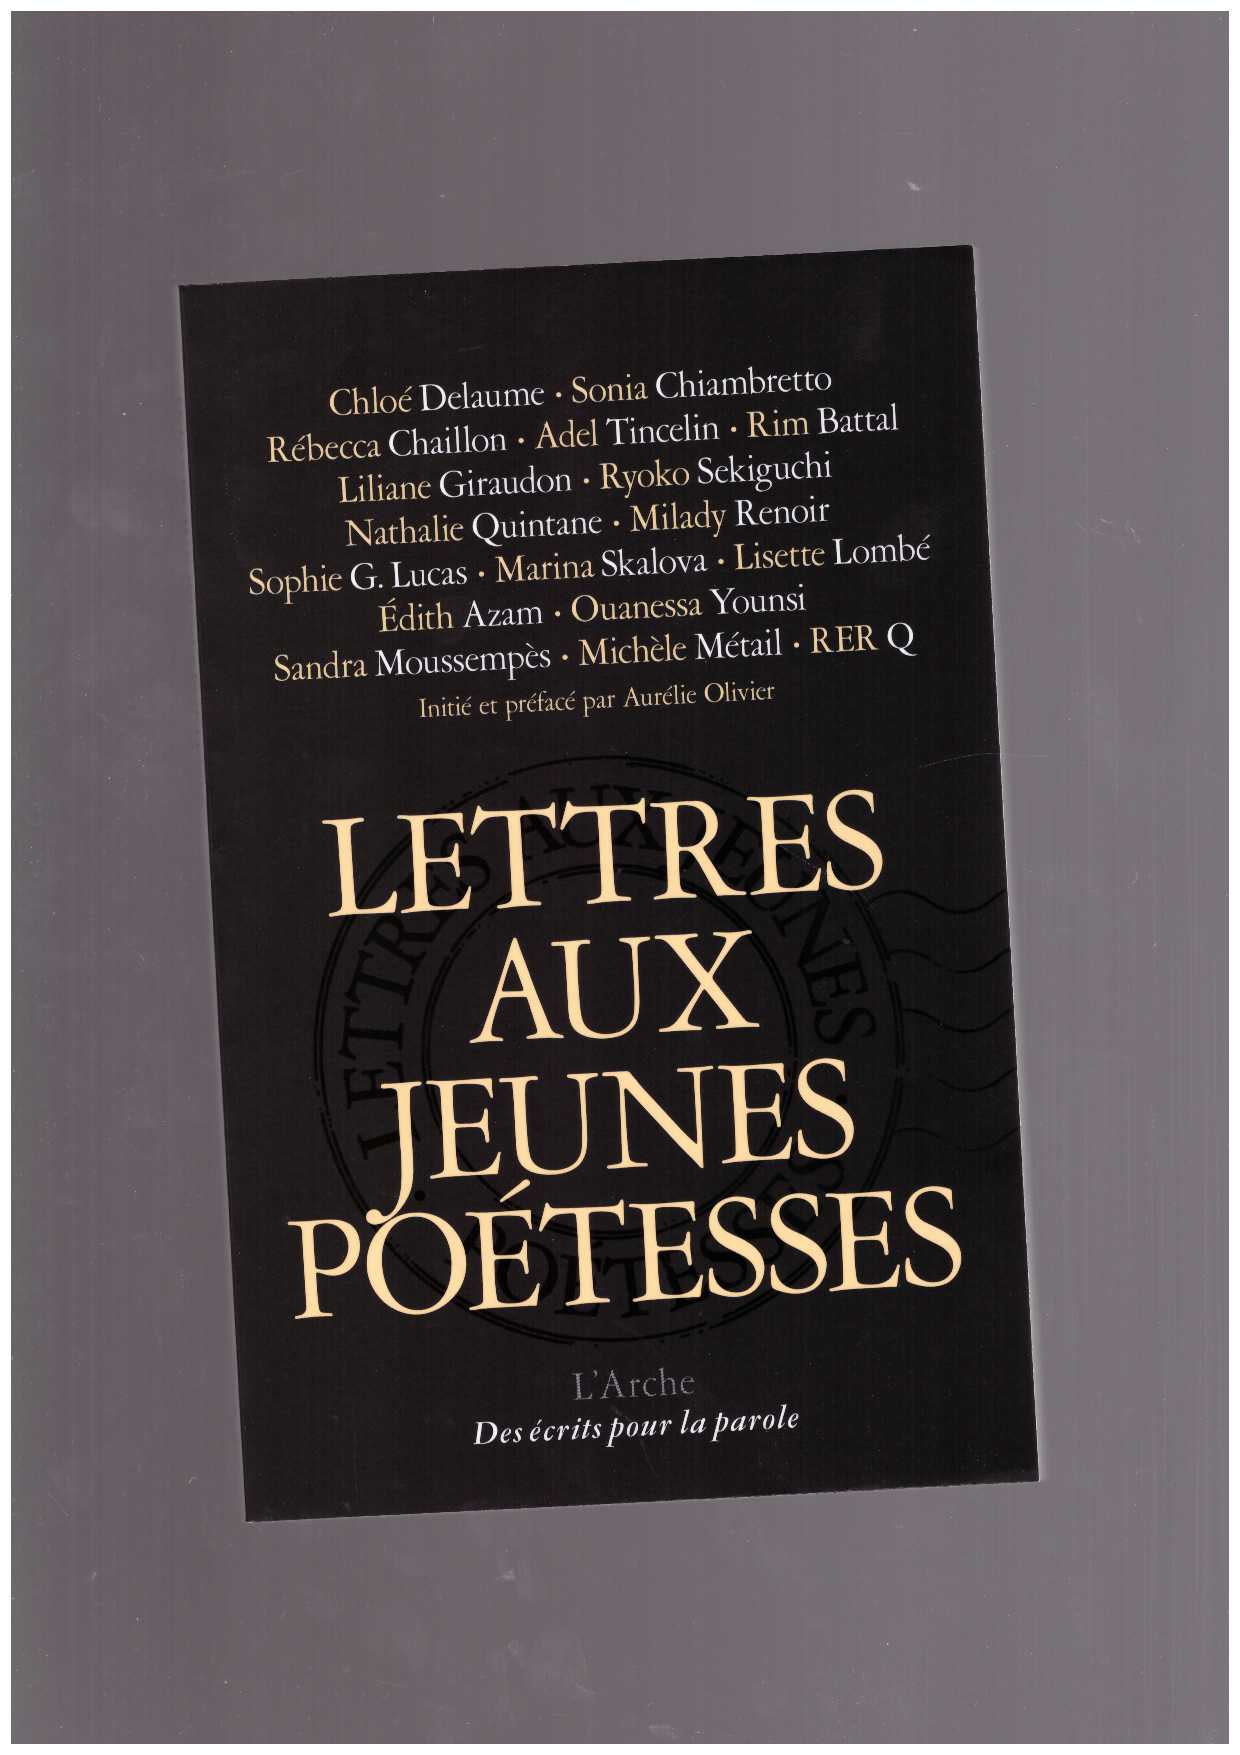 OLIVIER, Aurélie (ed.) - Lettres aux jeunes poétesses